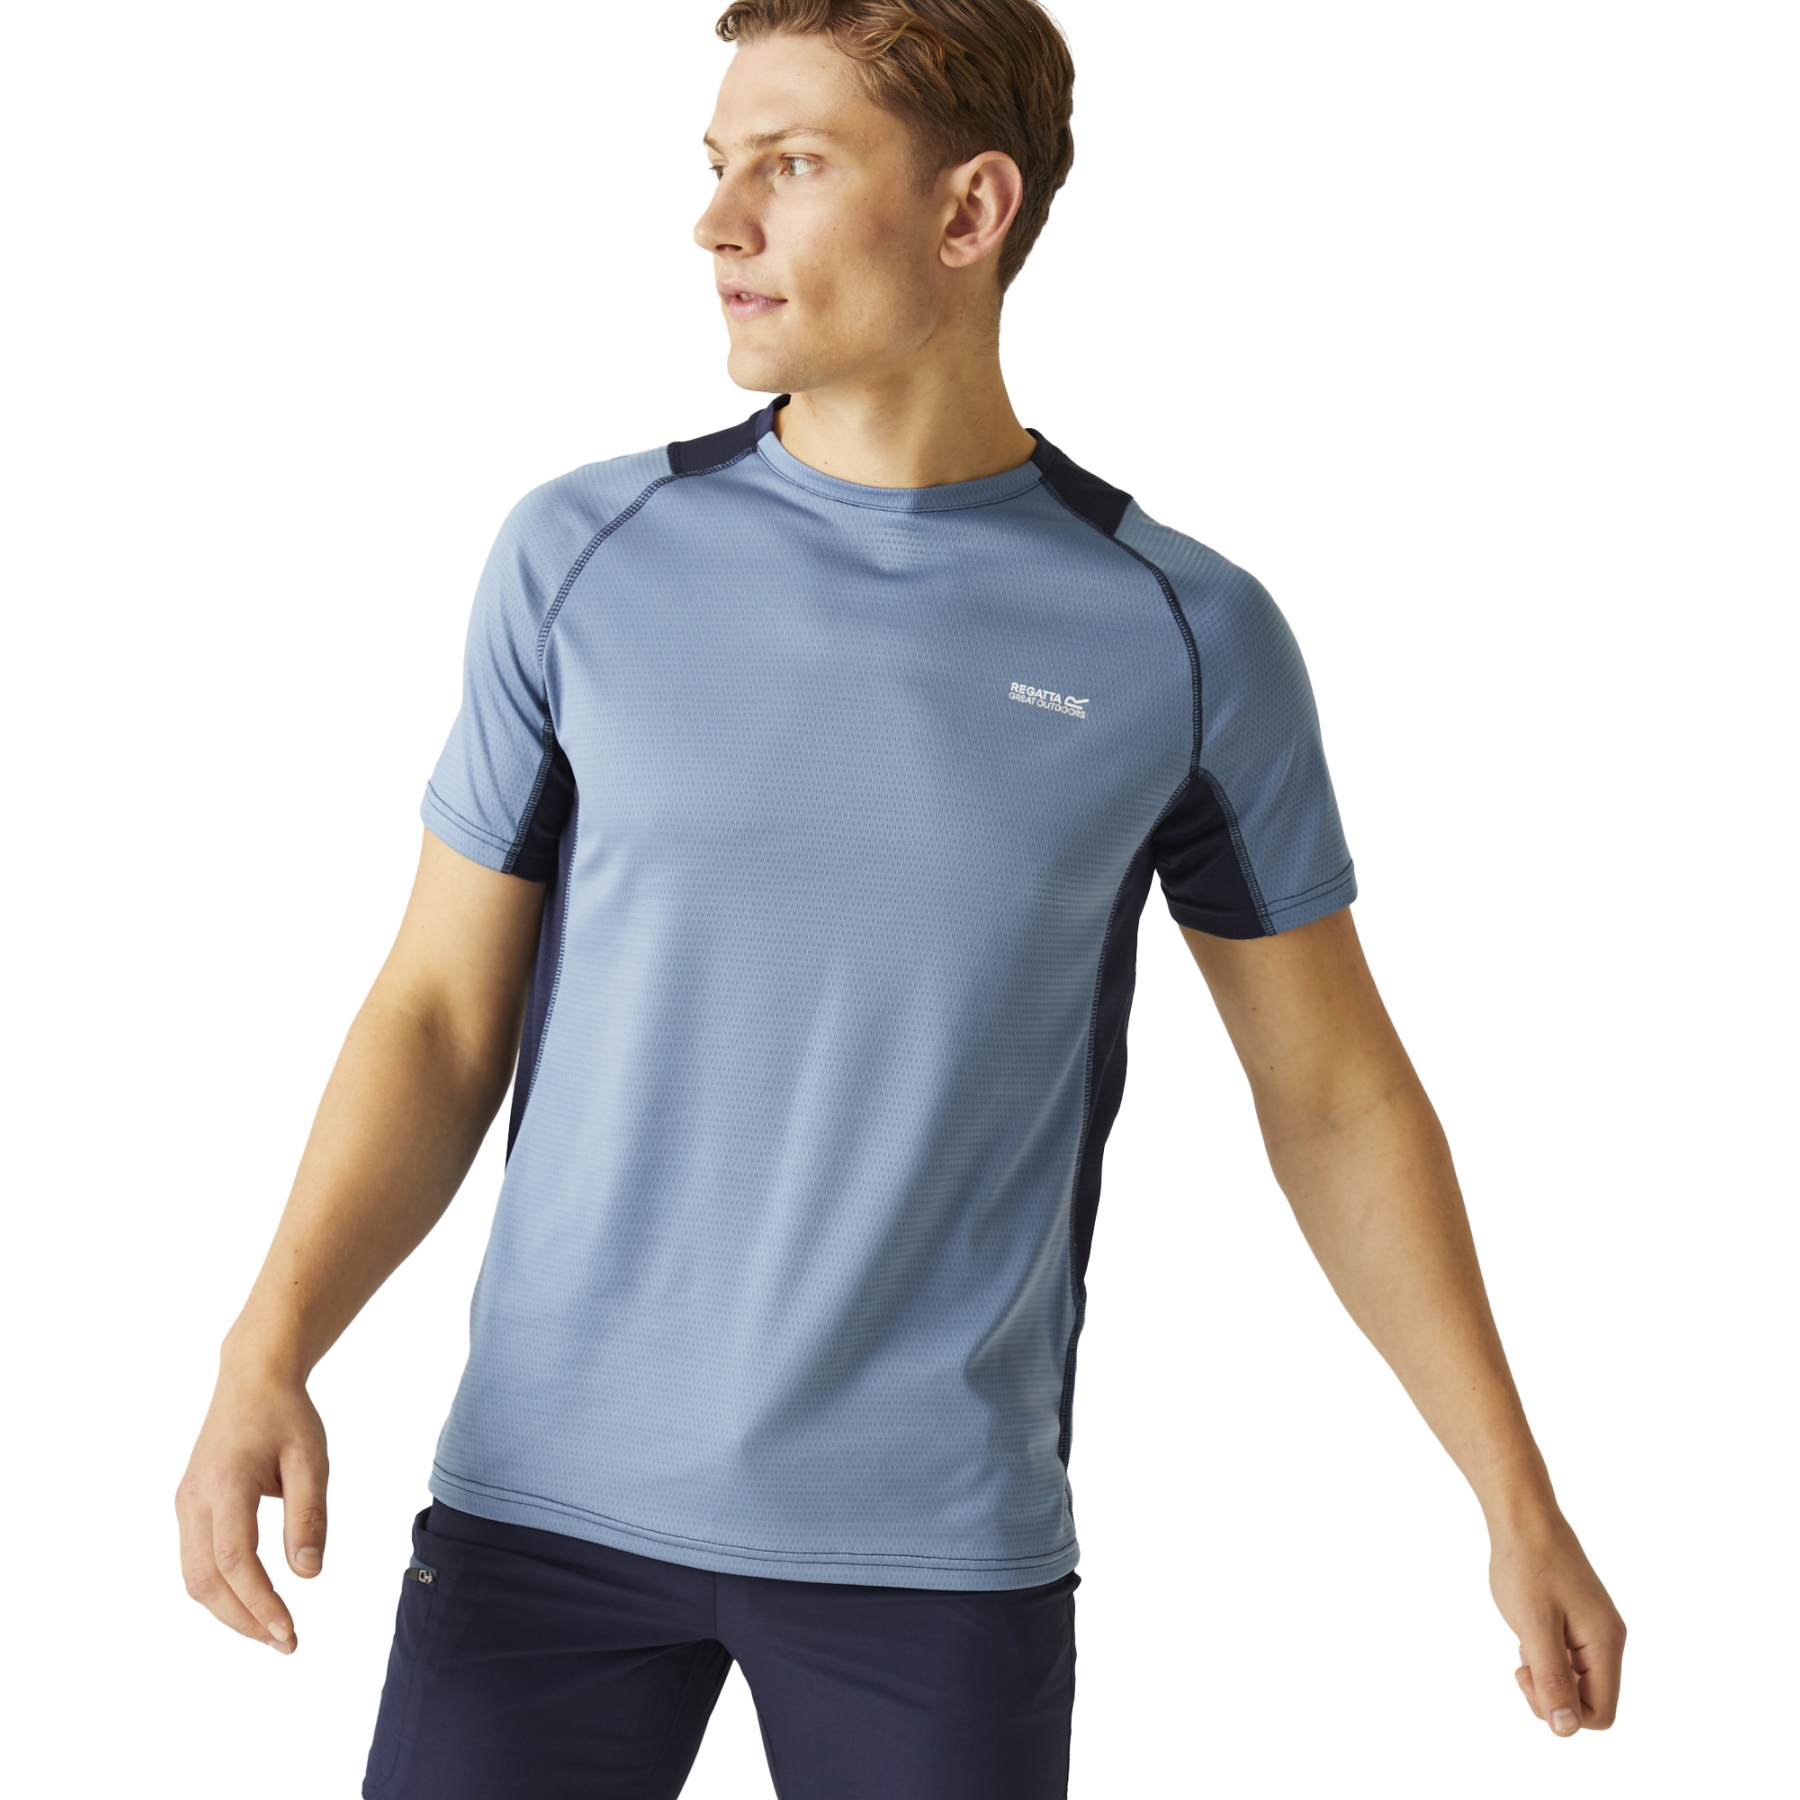 Produktbild von Regatta Virda IV T-Shirt Herren - Coronet Blue/Navy M03